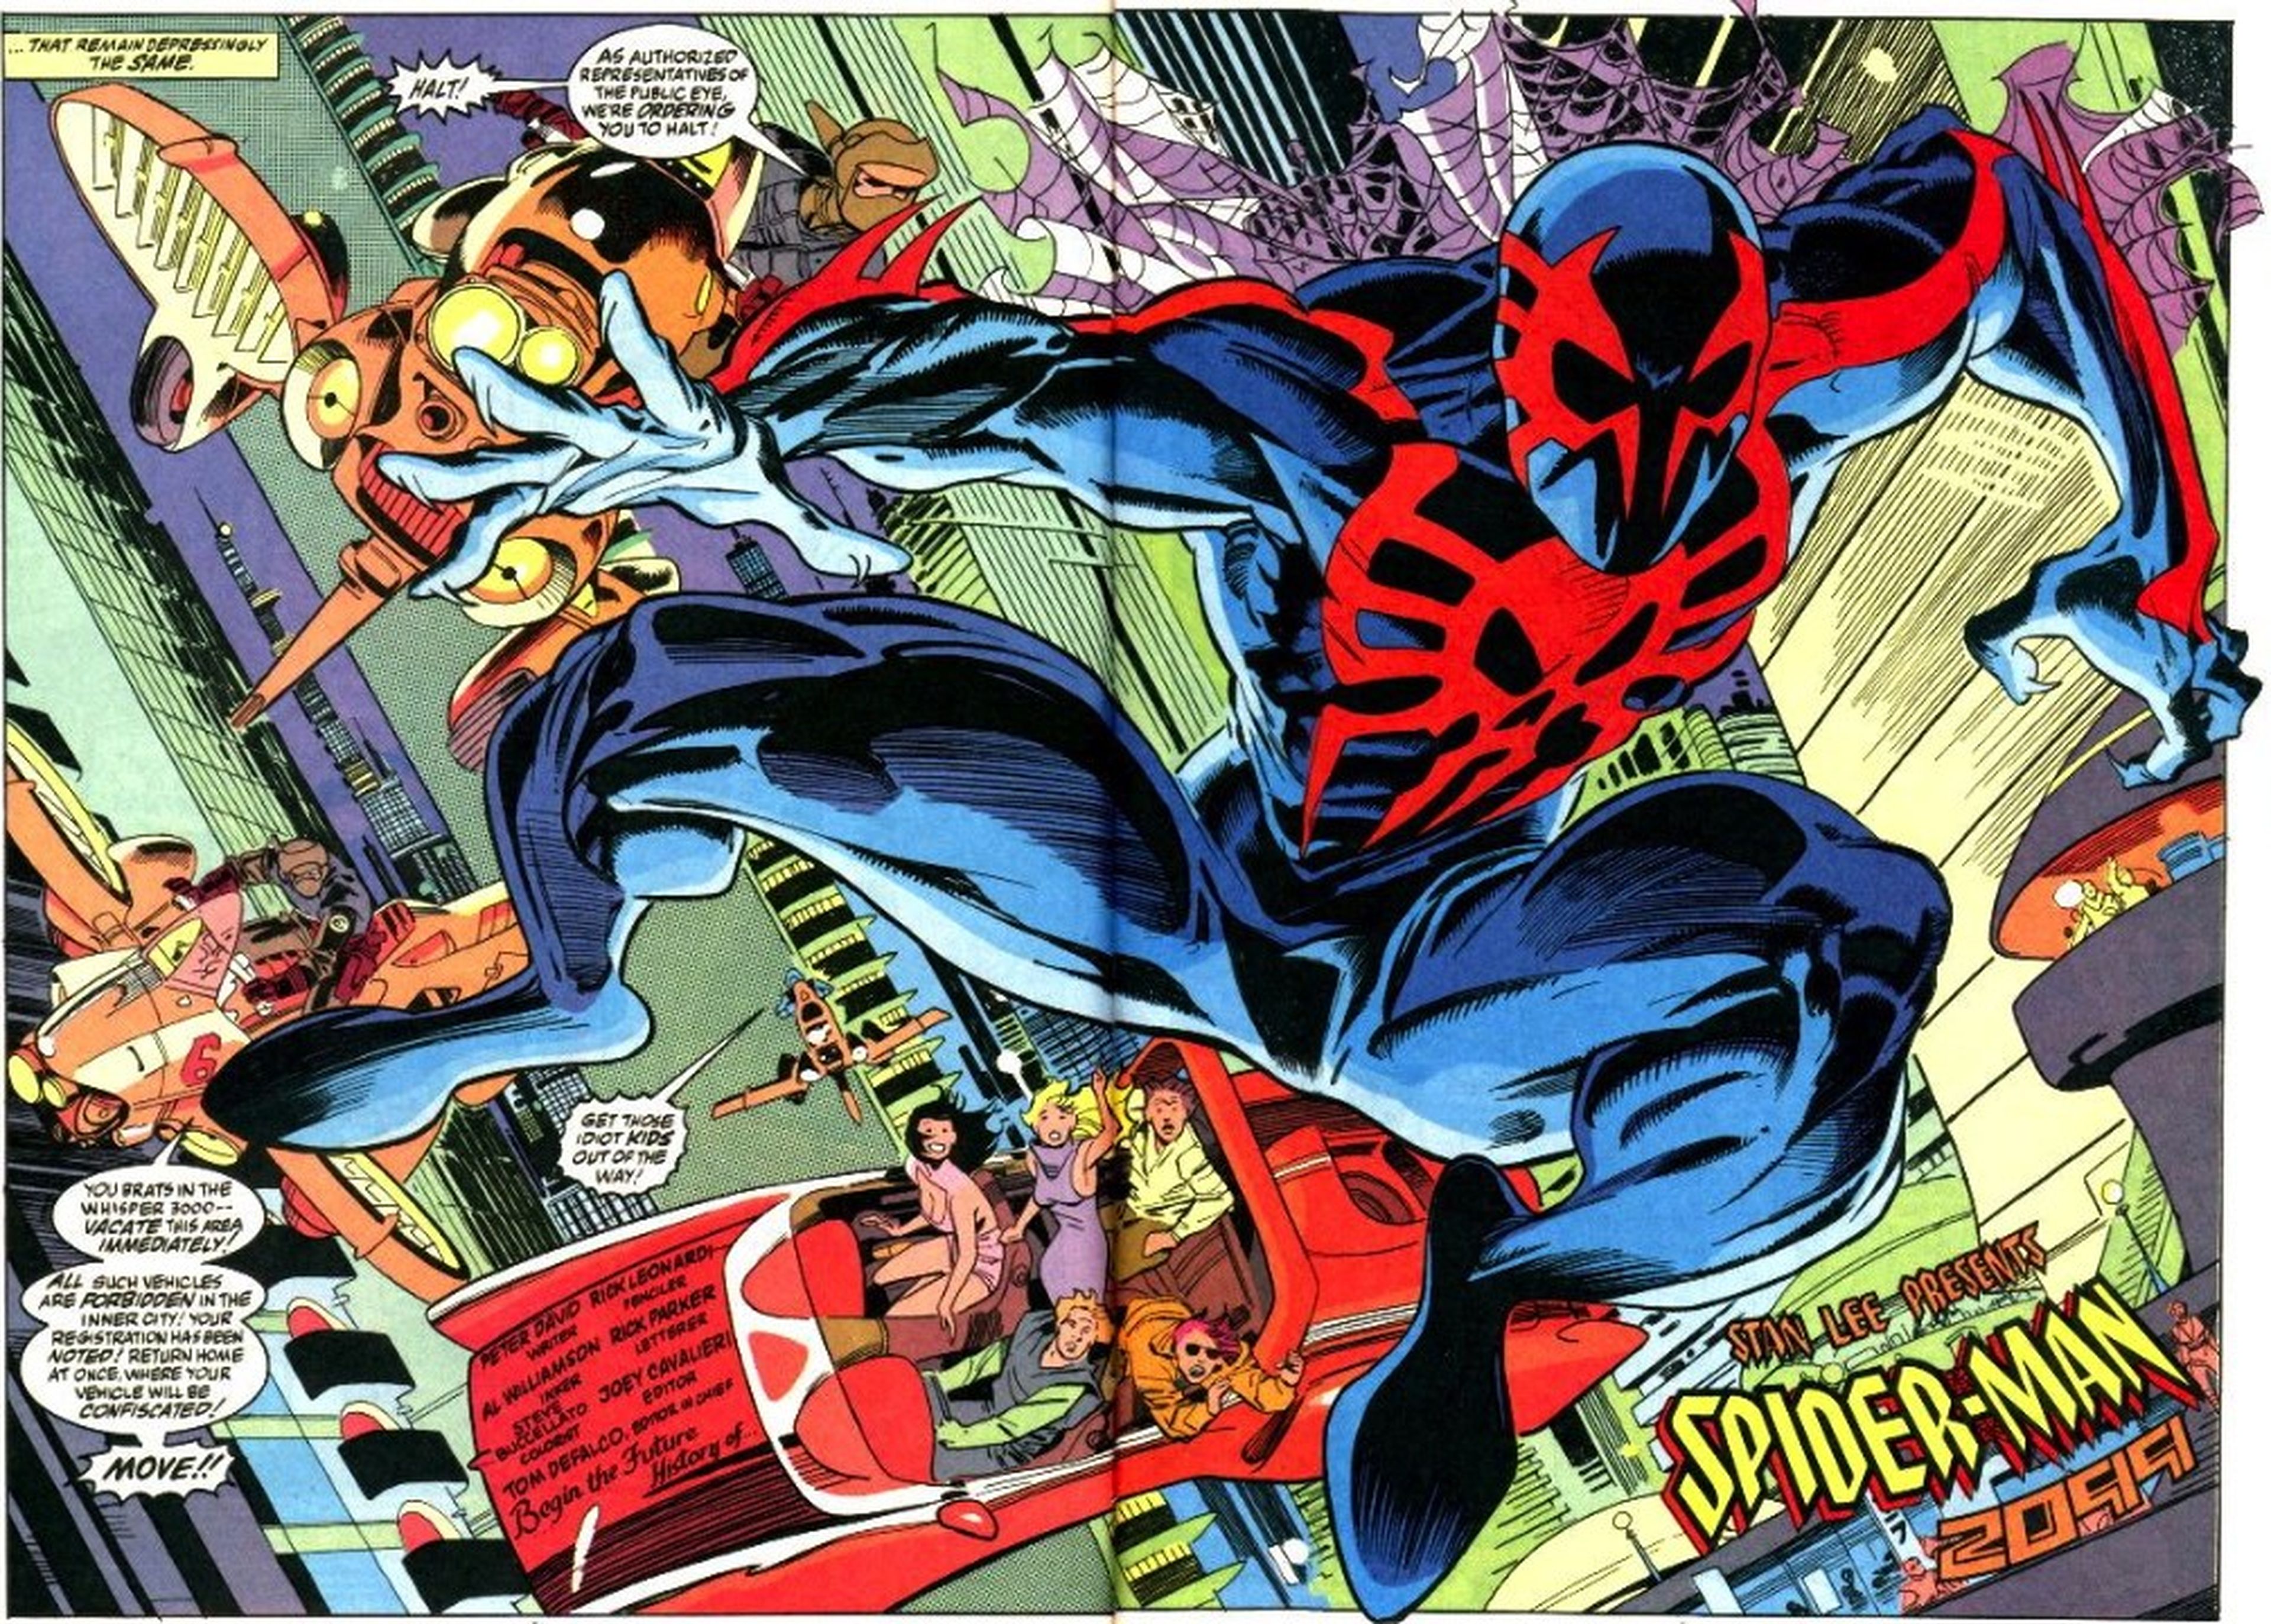 Marvel 2099 (Spider-Man 2099)